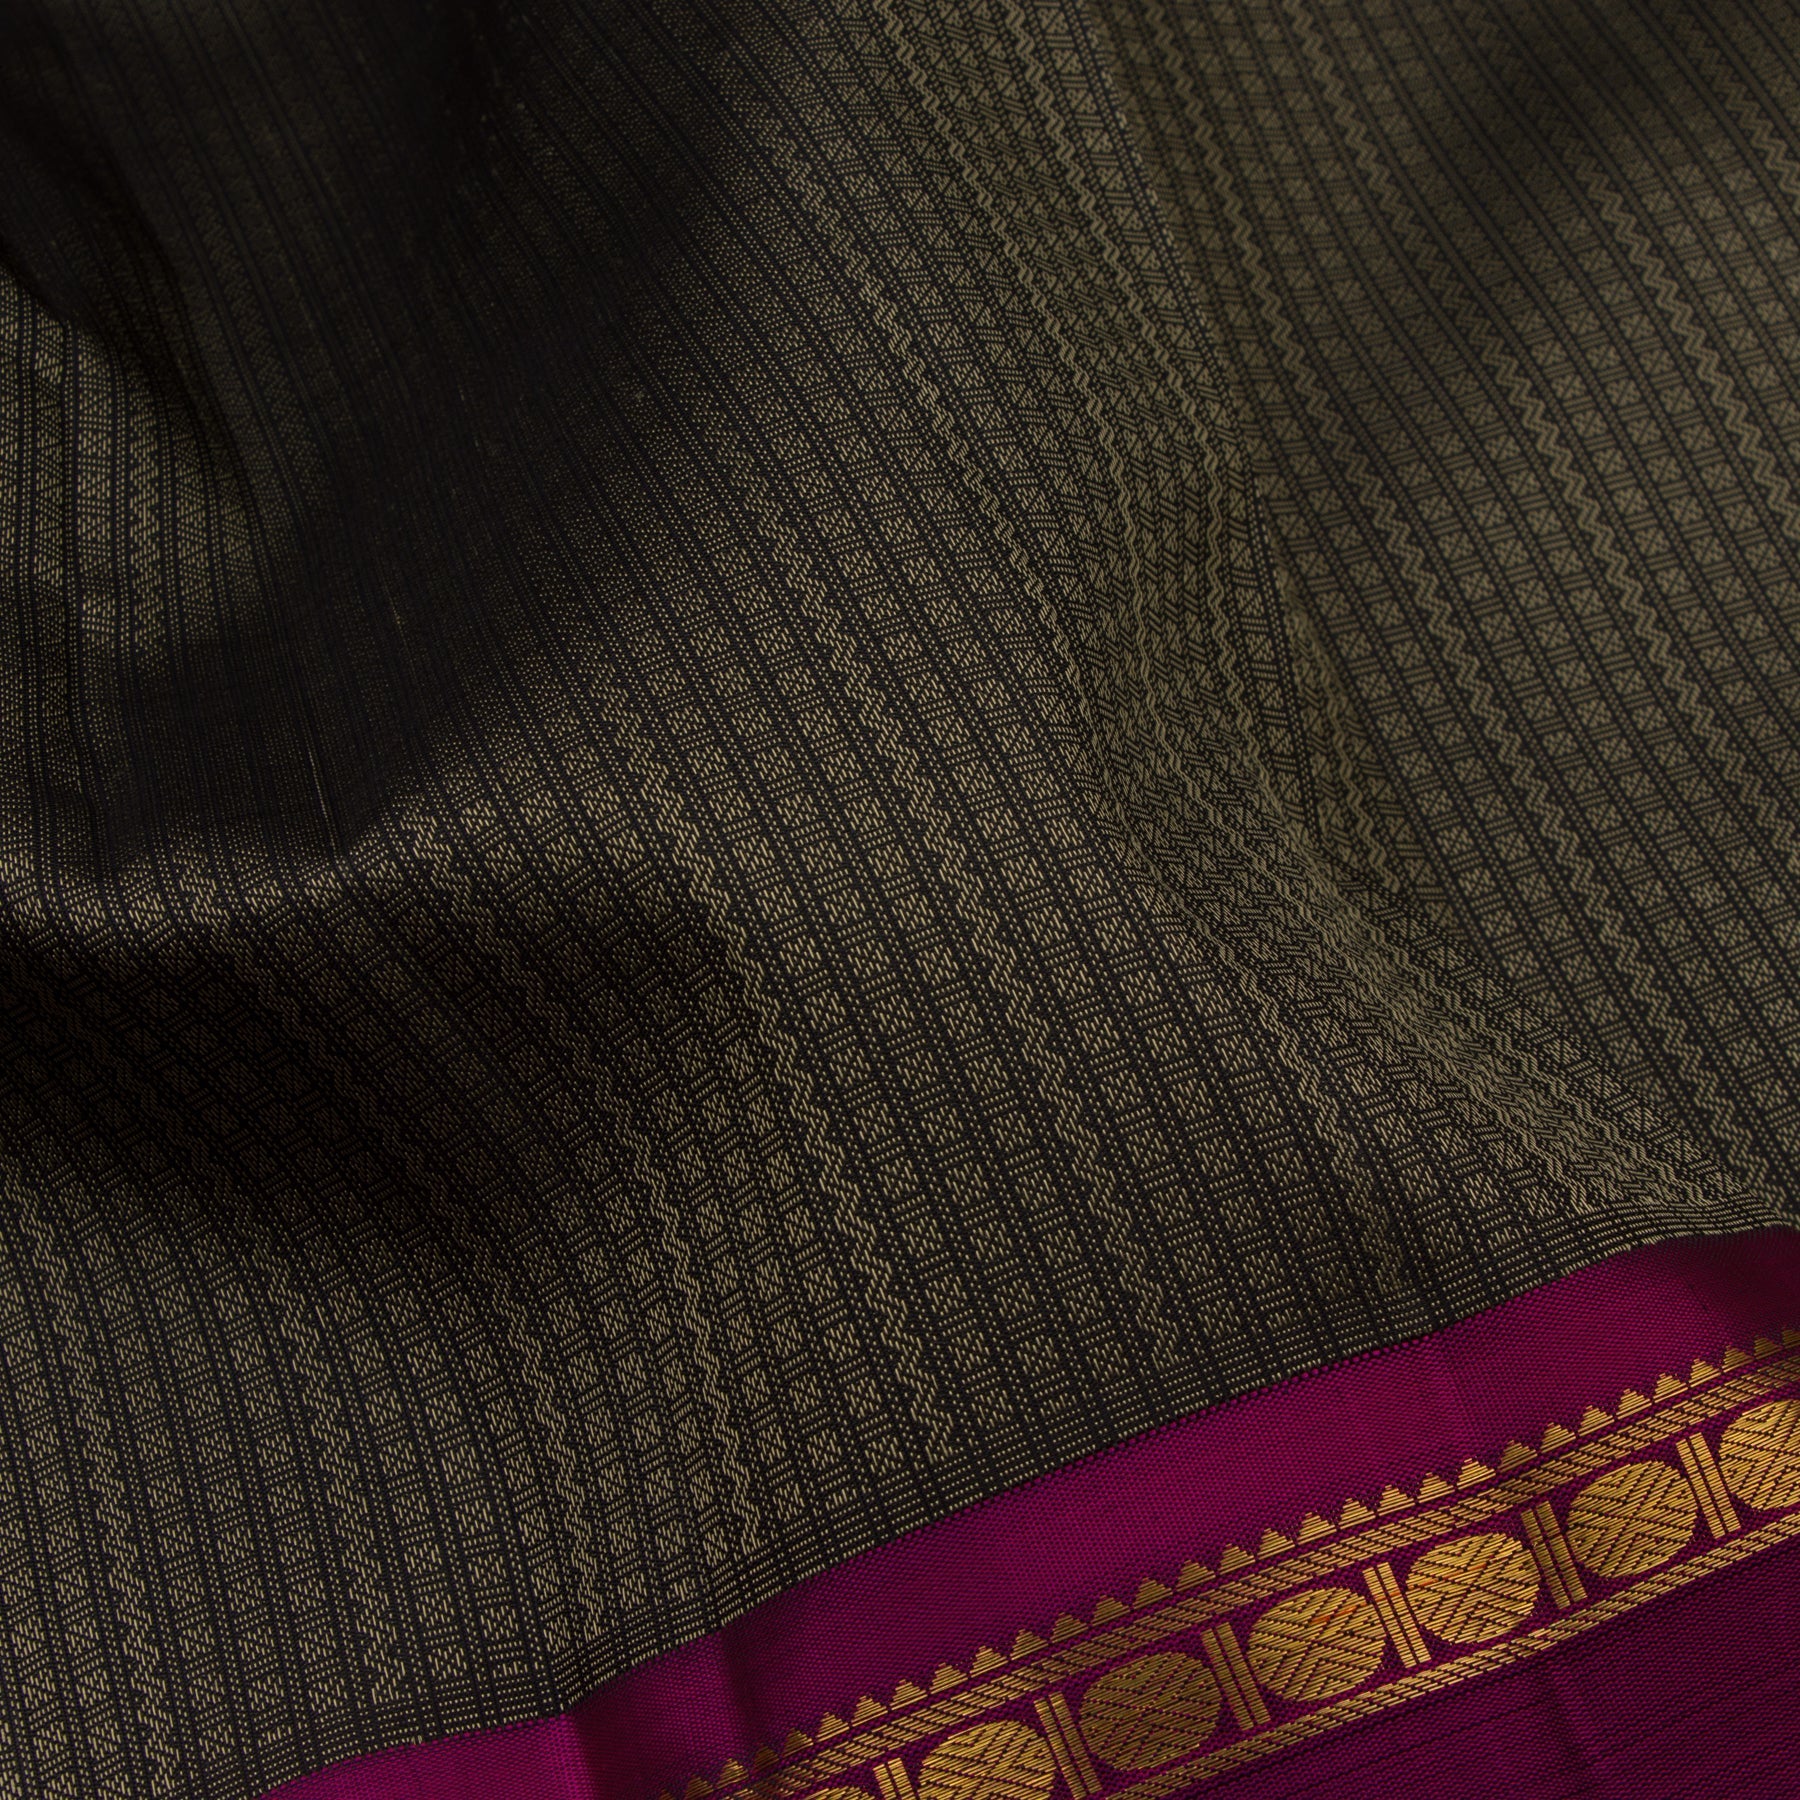 Kanakavalli Kanjivaram Silk Sari 23-110-HS001-03012 - Fabric View